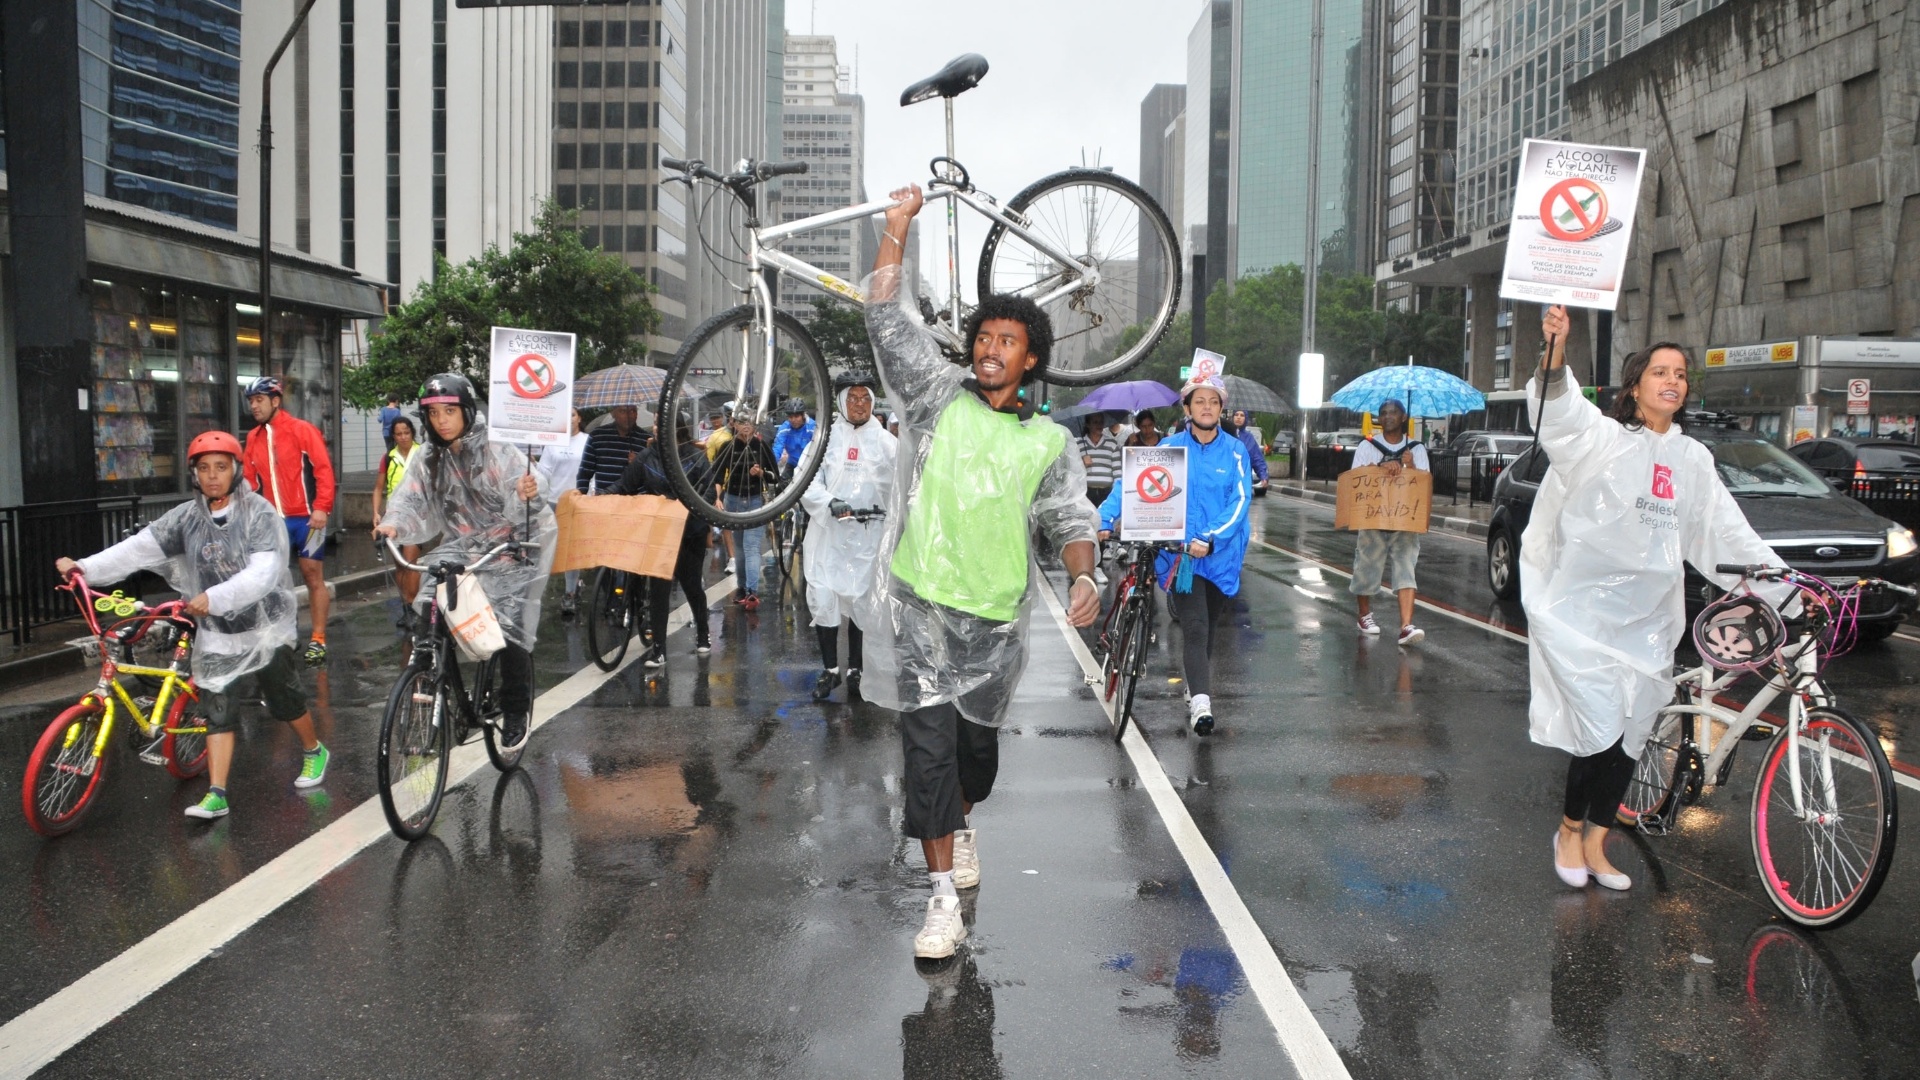 17mar2013---ciclistas-que-circulam-pela-avenida-paulista-em-sao-paulo-neste-domingo-17-colocam-cartazes-nas-bicicletas-em-forma-de-protesto-contra-a-combinacao-de-bebidas-alcoolic